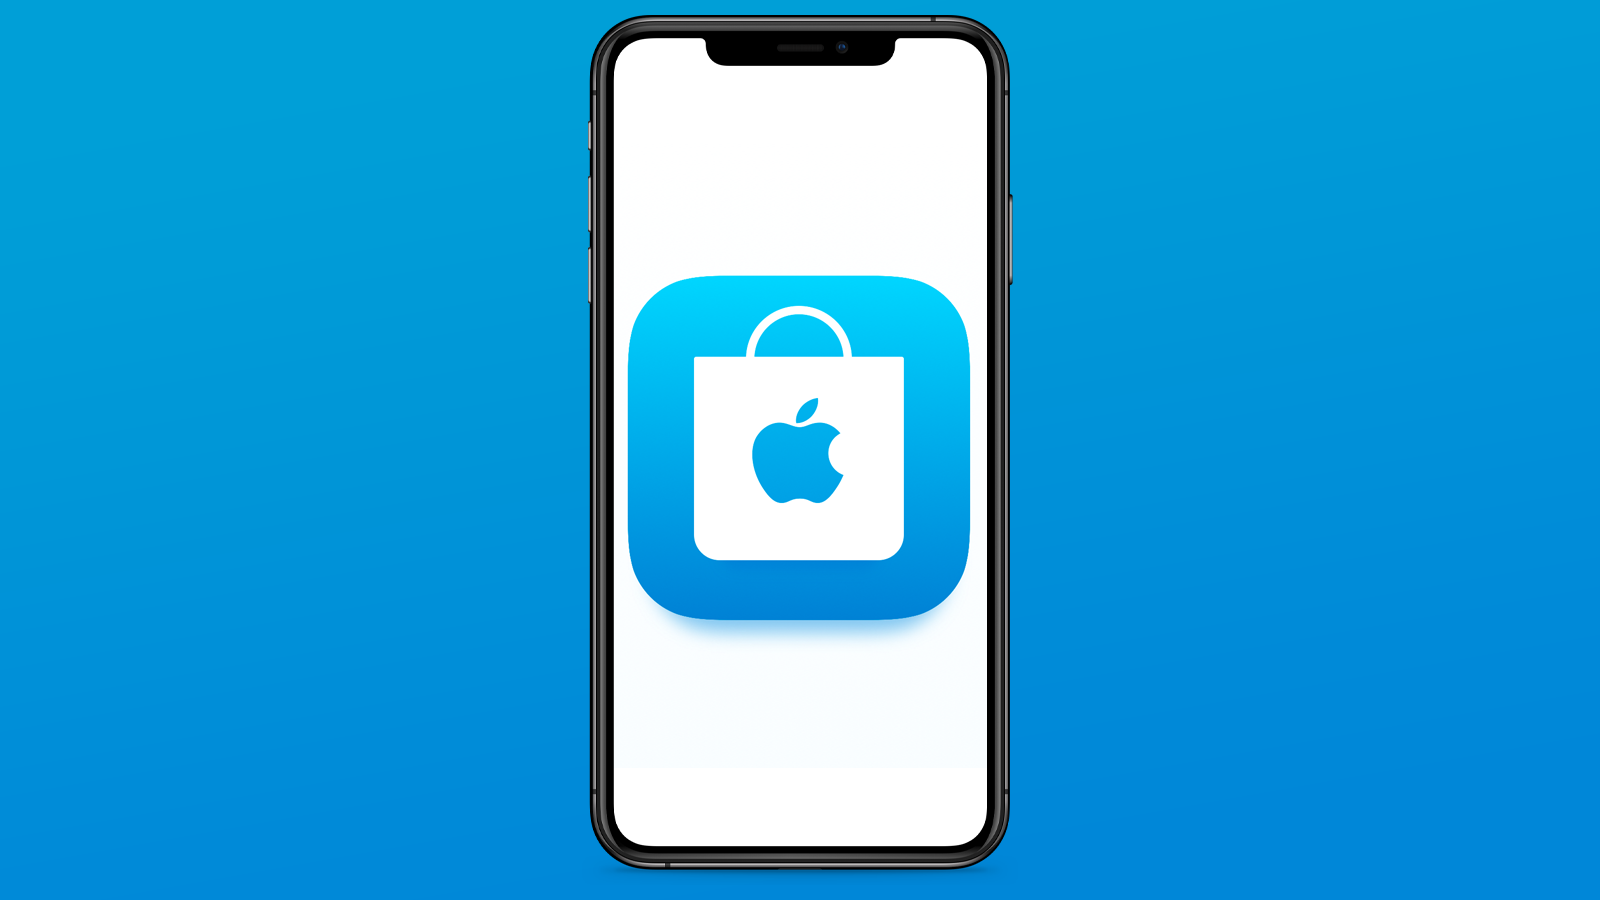 App Store 24 نوفمبر 2020
Apple لن يوافق على أي تطبيقات أو تحديثات جديدة خلال عيد الميلاد